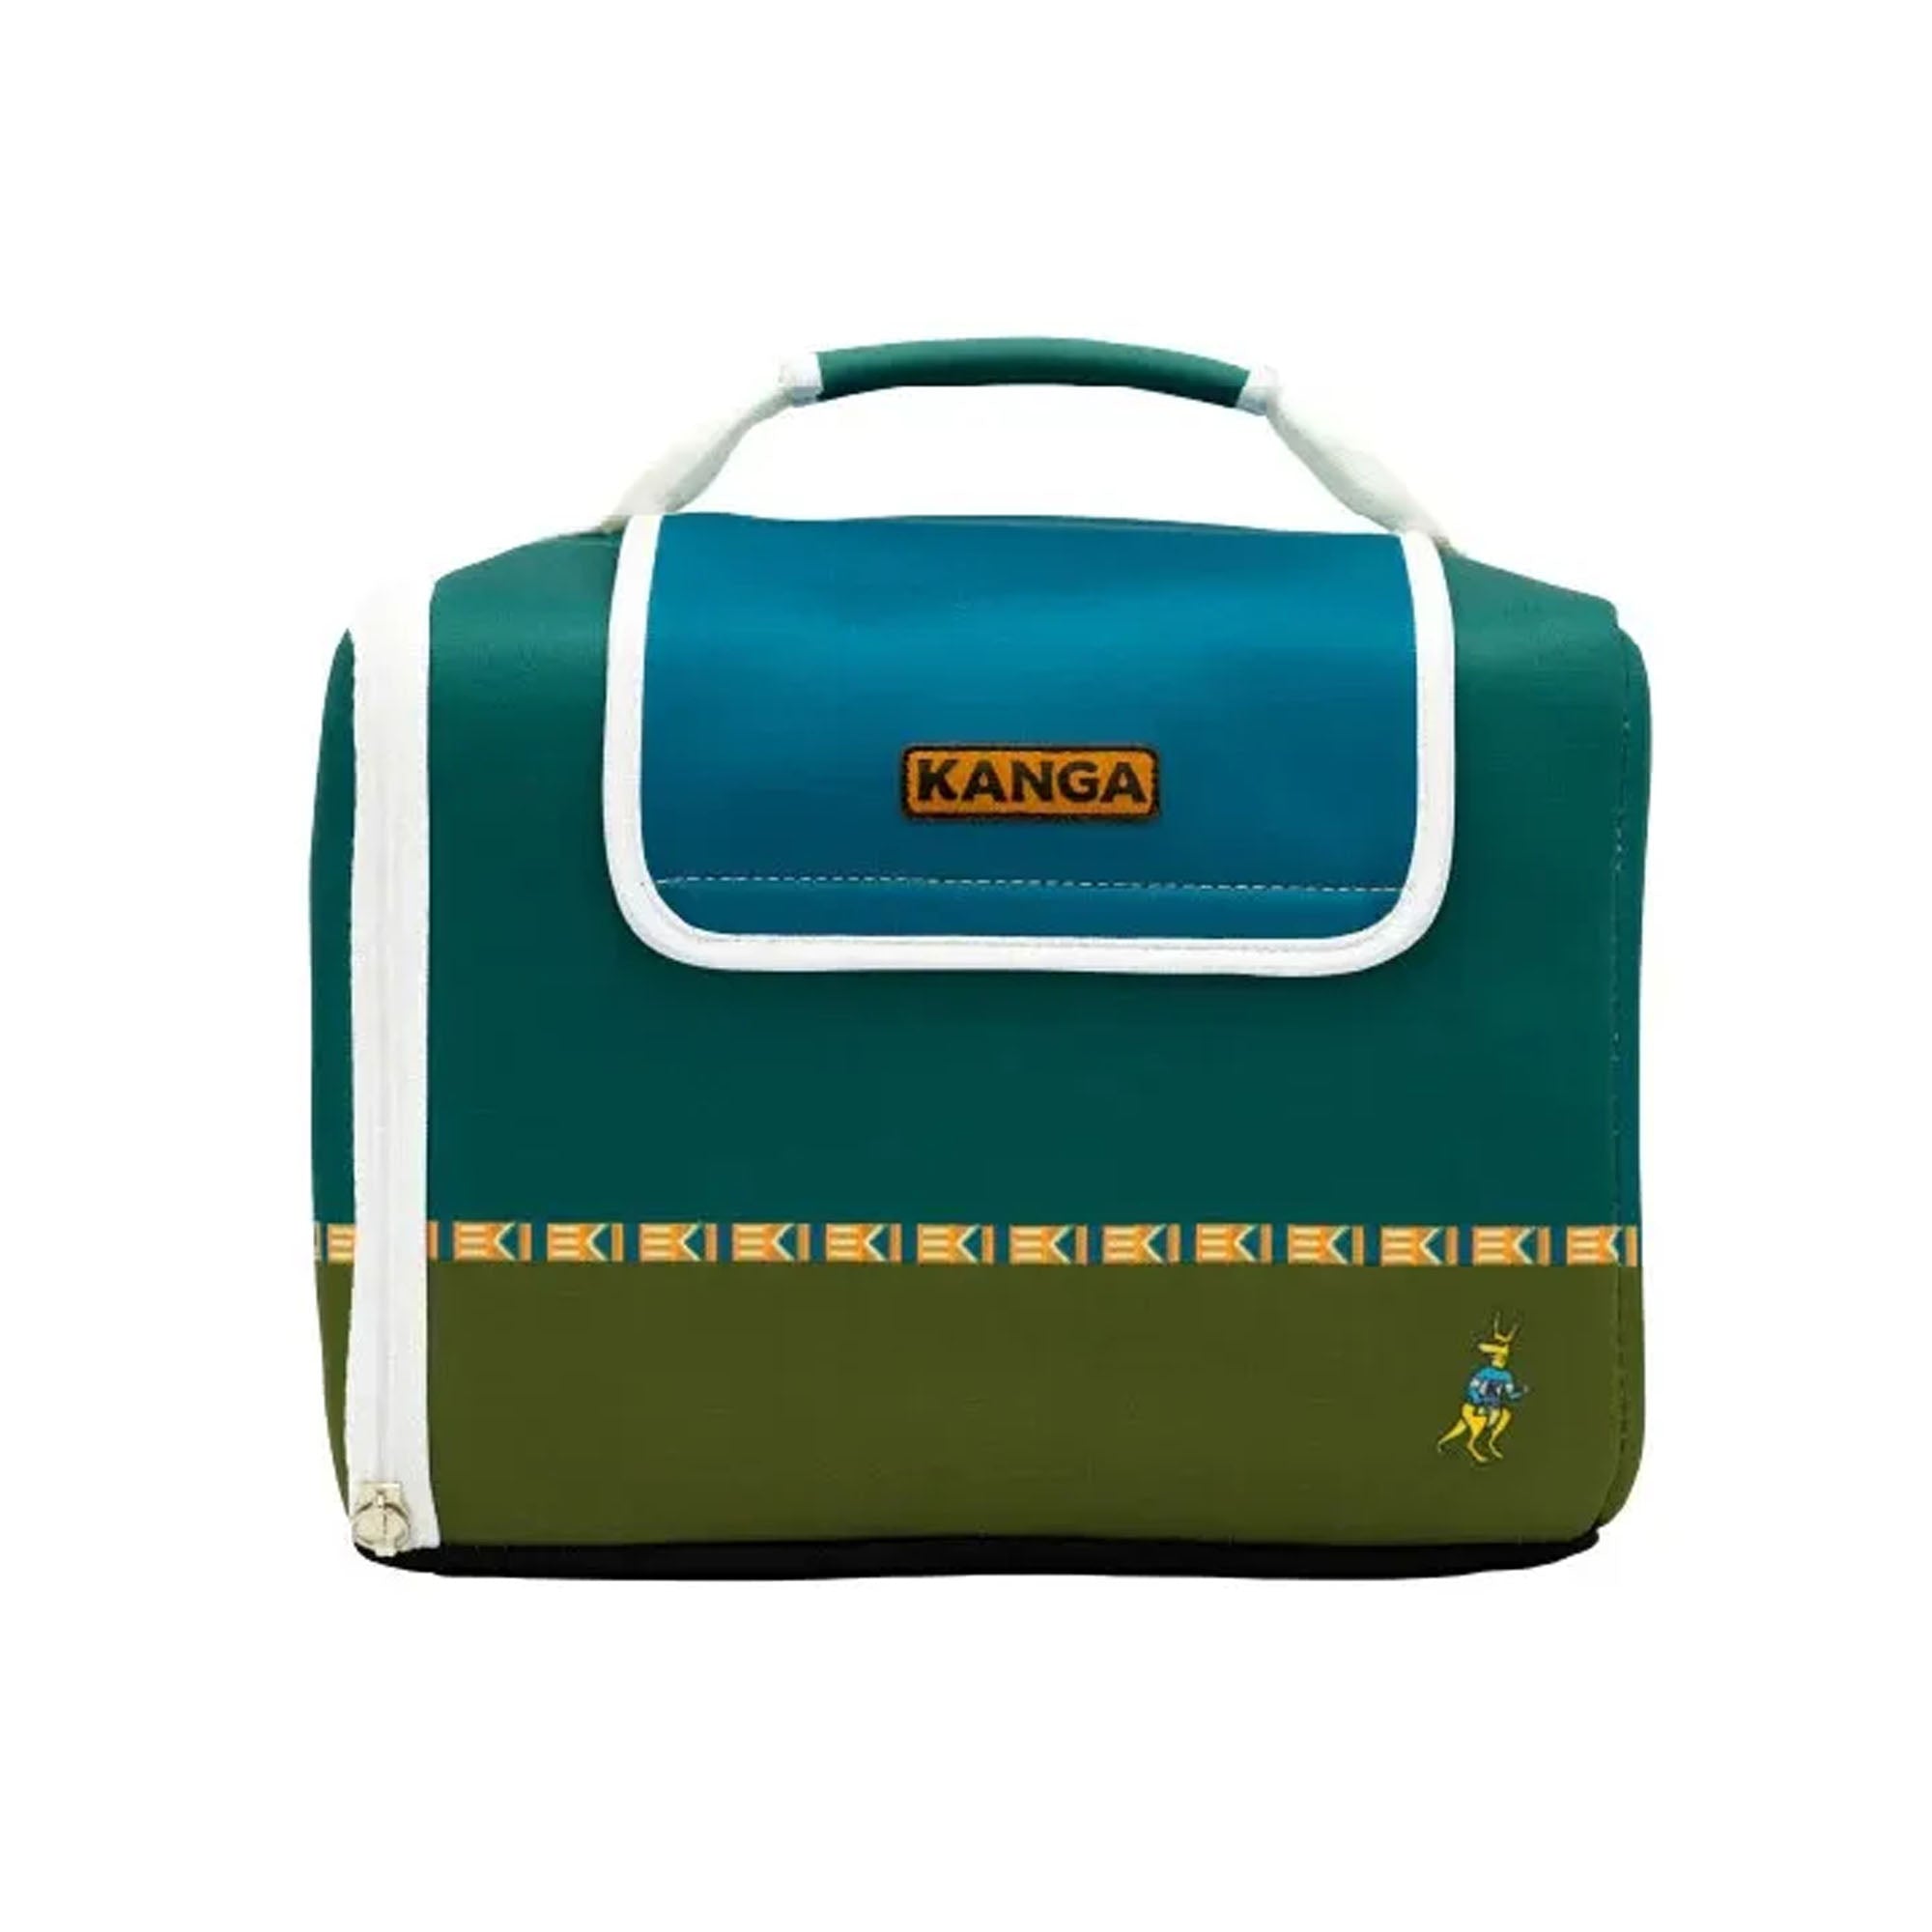 Kanga Coolers Kase Mate 12-Pack Cooler